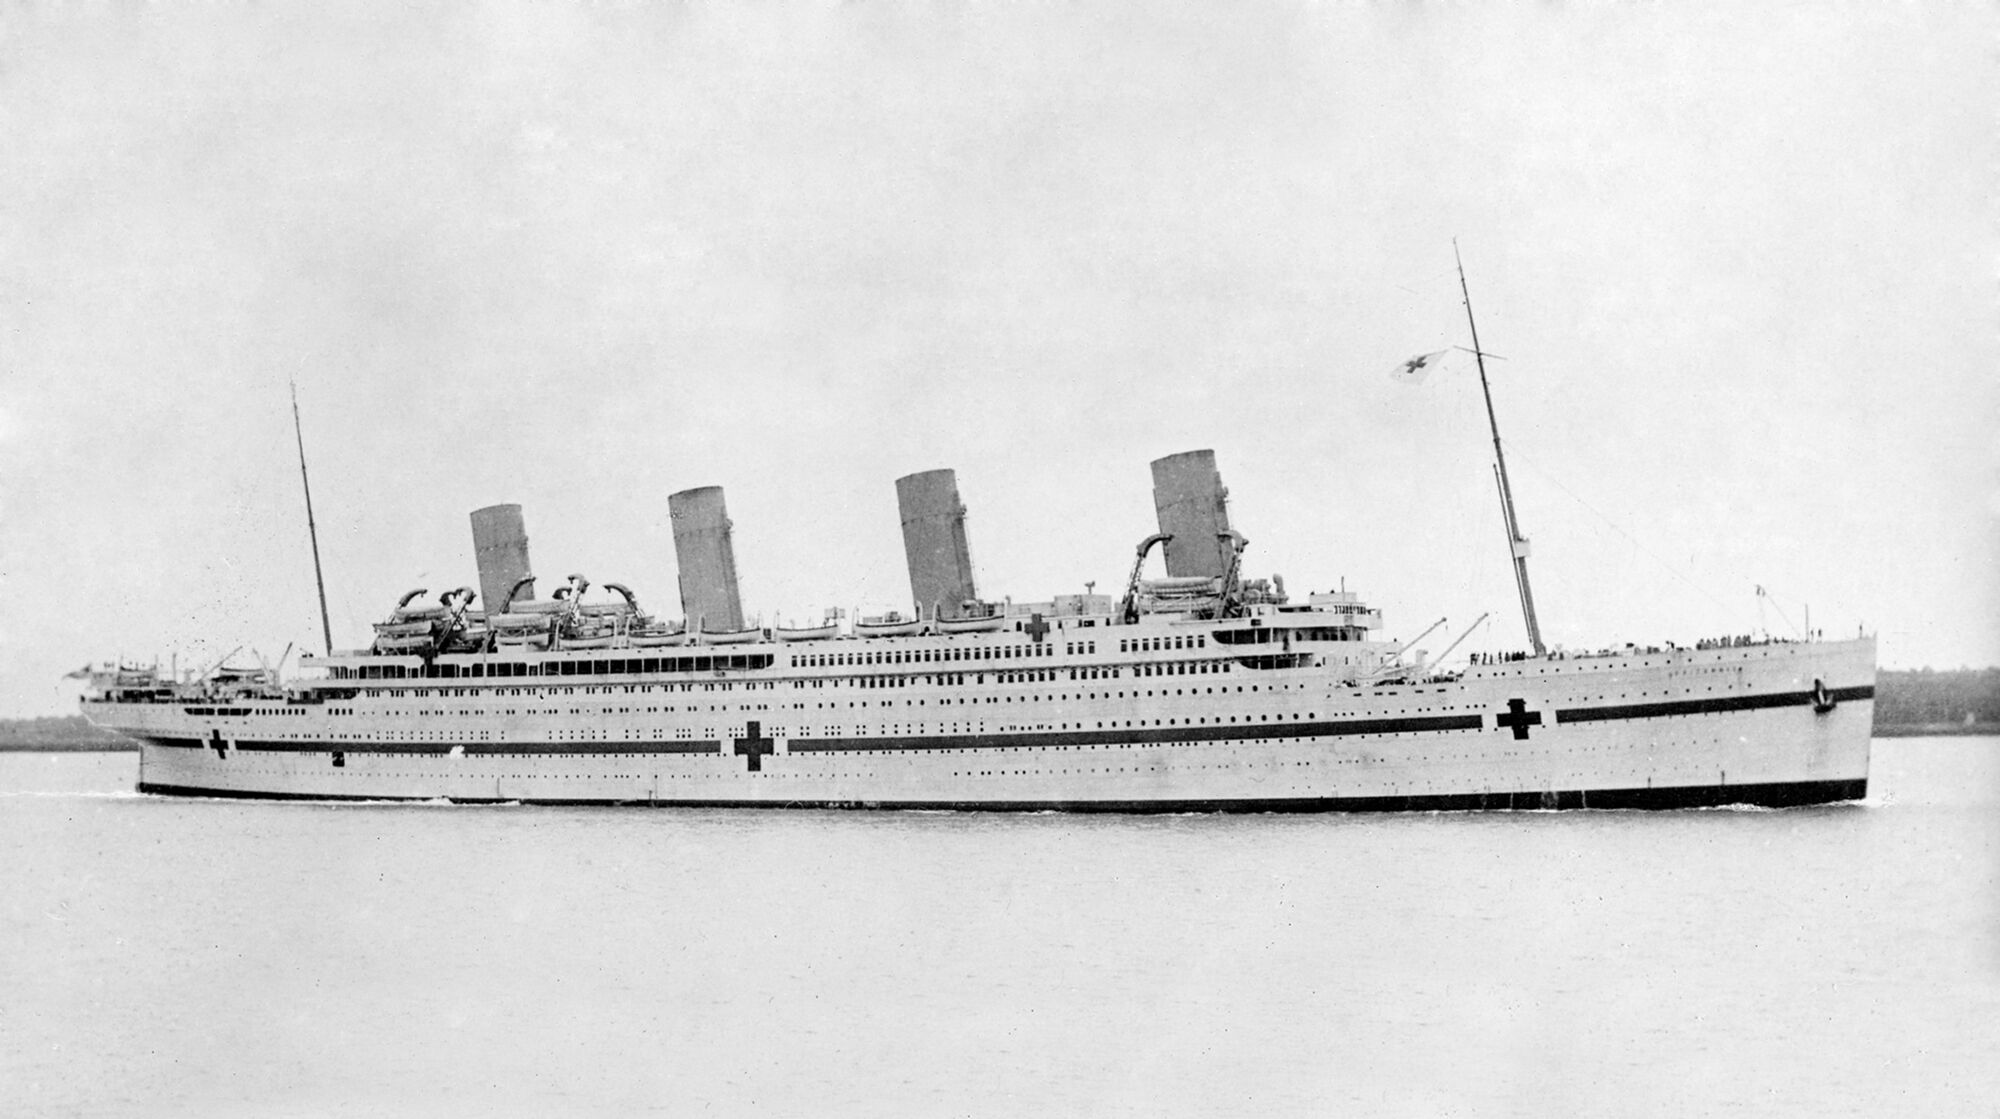 Hmhs Britannic Titanic Wiki Fandom Powered By Wikia - 